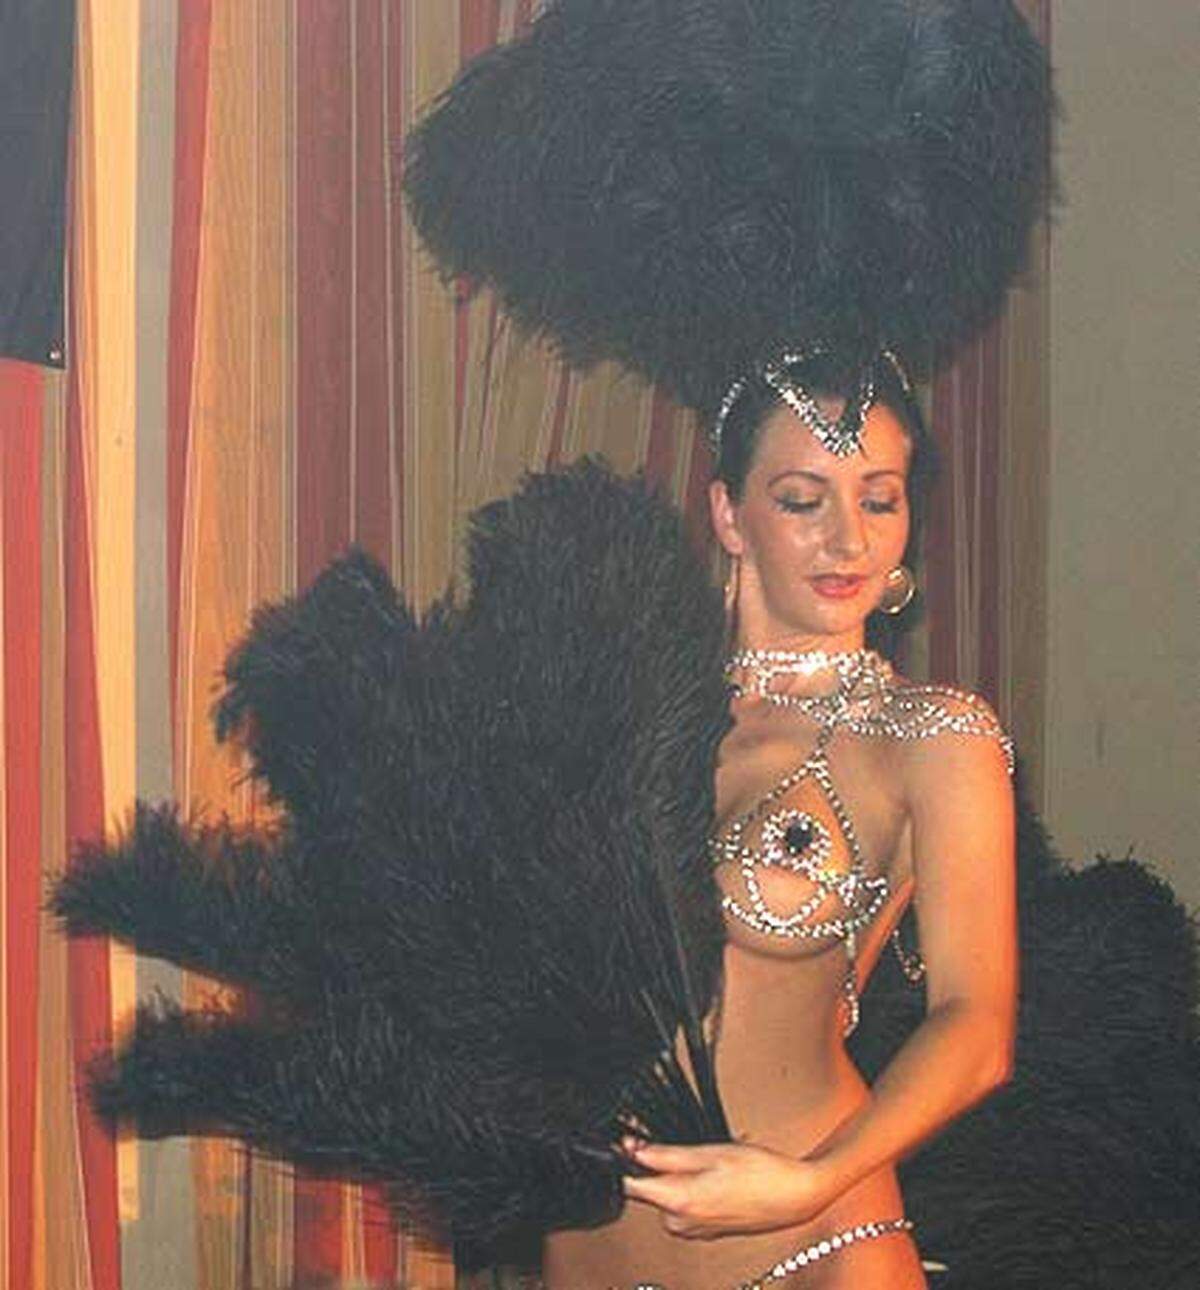 Und natürlich durfte eine Vertreterin des "New Burlesque, des humorvoll-erotischen Tanzes, nicht fehlen. Kommt doch heuer die bekannteste Vertreterin dieser Zunft, Dita von Teese, zum Wiener Opernball.